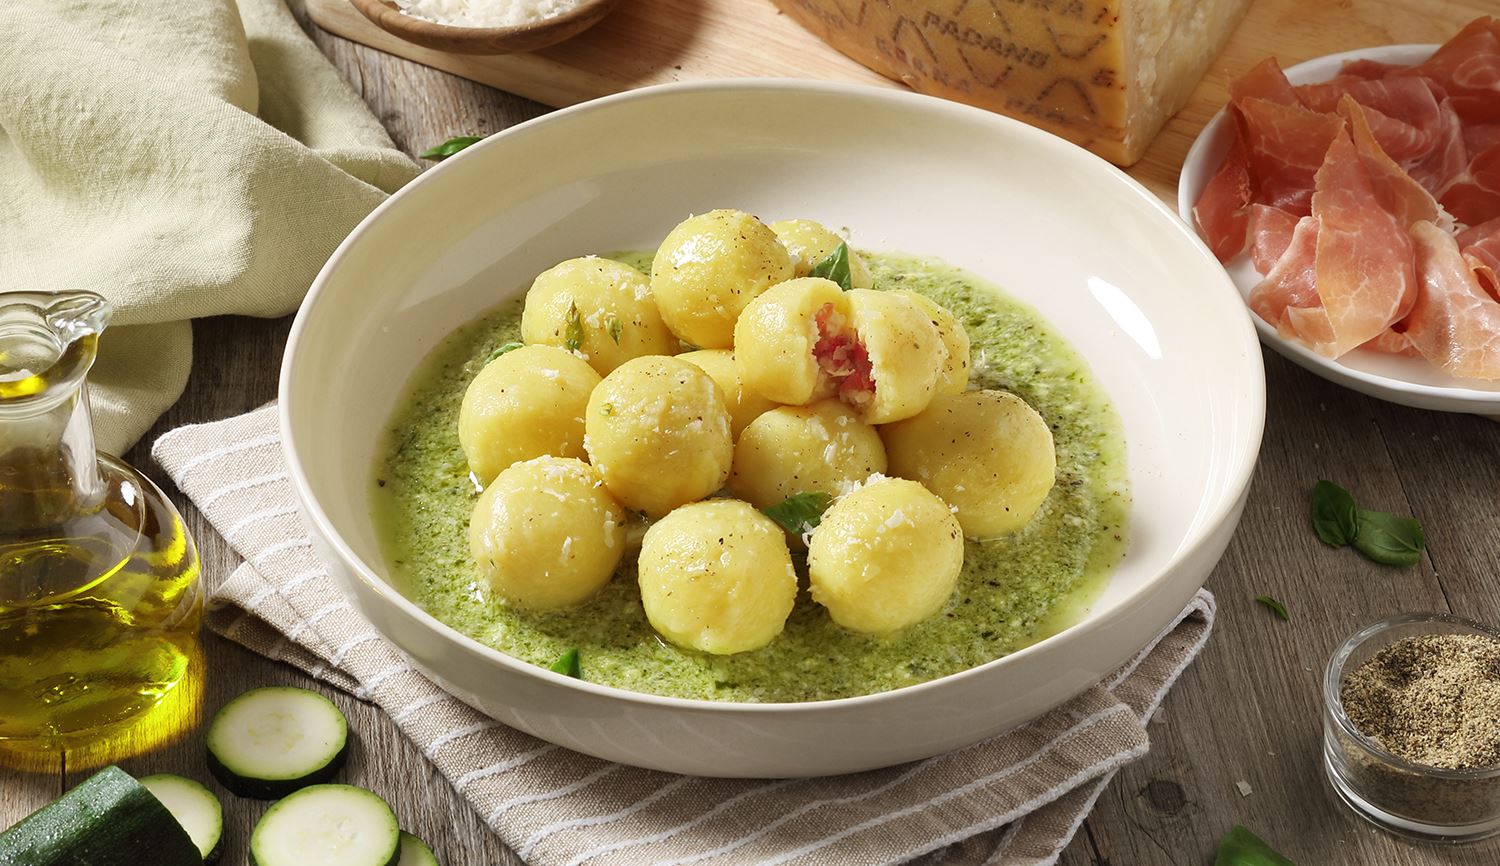 Potato Gnocchi Filled with Grana Padano Riserva and Prosciutto, garnished with Courgette and Basil Pesto